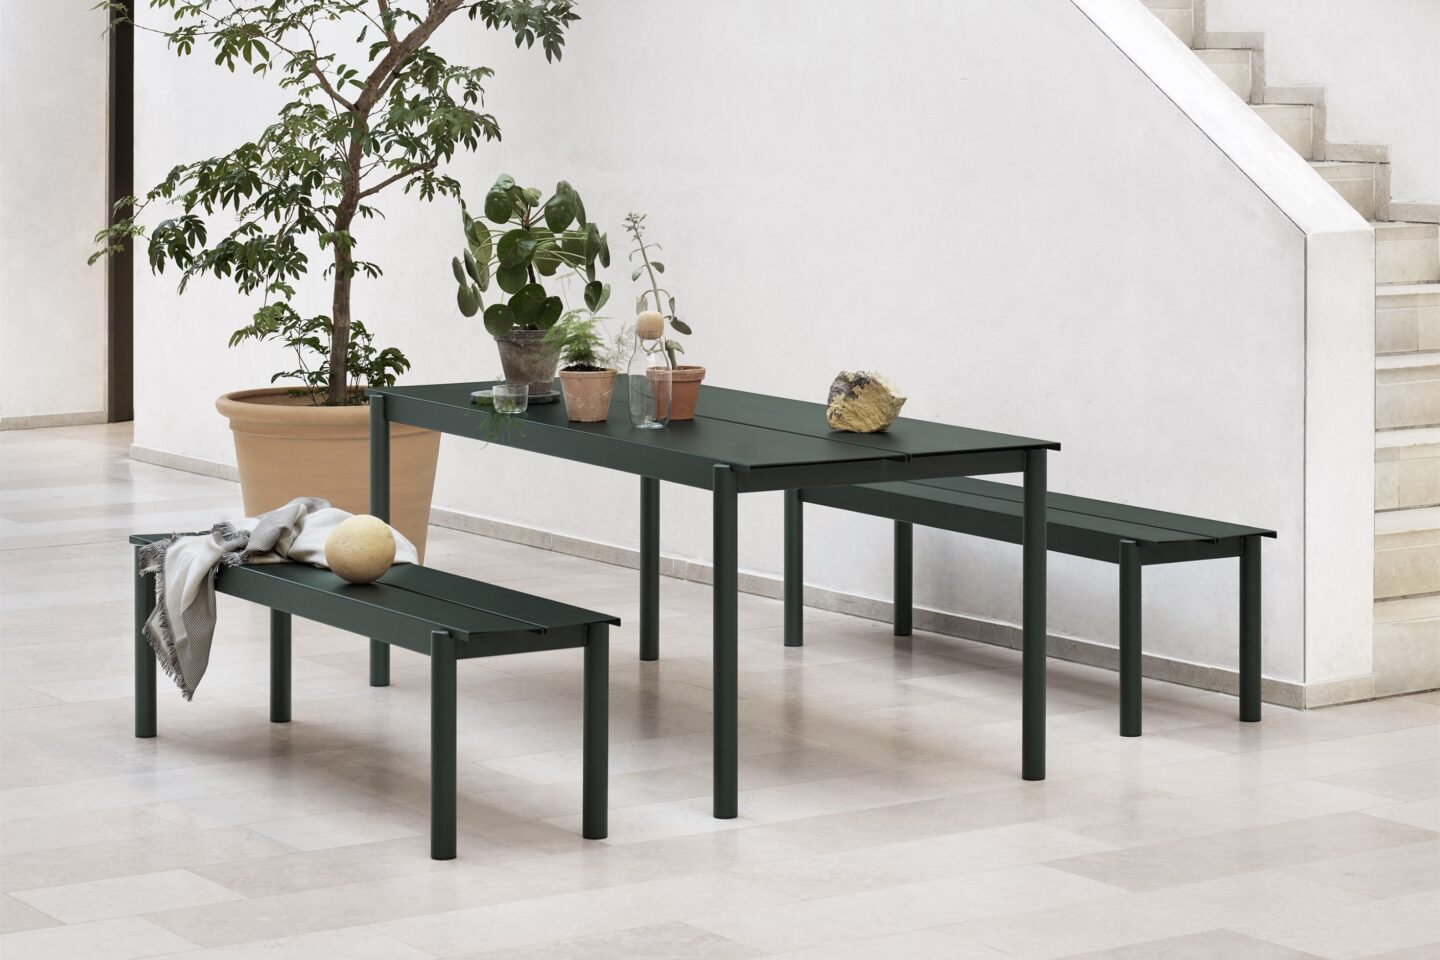 Linear Steel Tisch & Bank von Thomas Bentzen für Muuto verbinden skandinavisches Design mit zeitgemäßem und dennoch elegantem Flair. Die gefalteten Kanten erleichtern das Entfernen von Wasser.